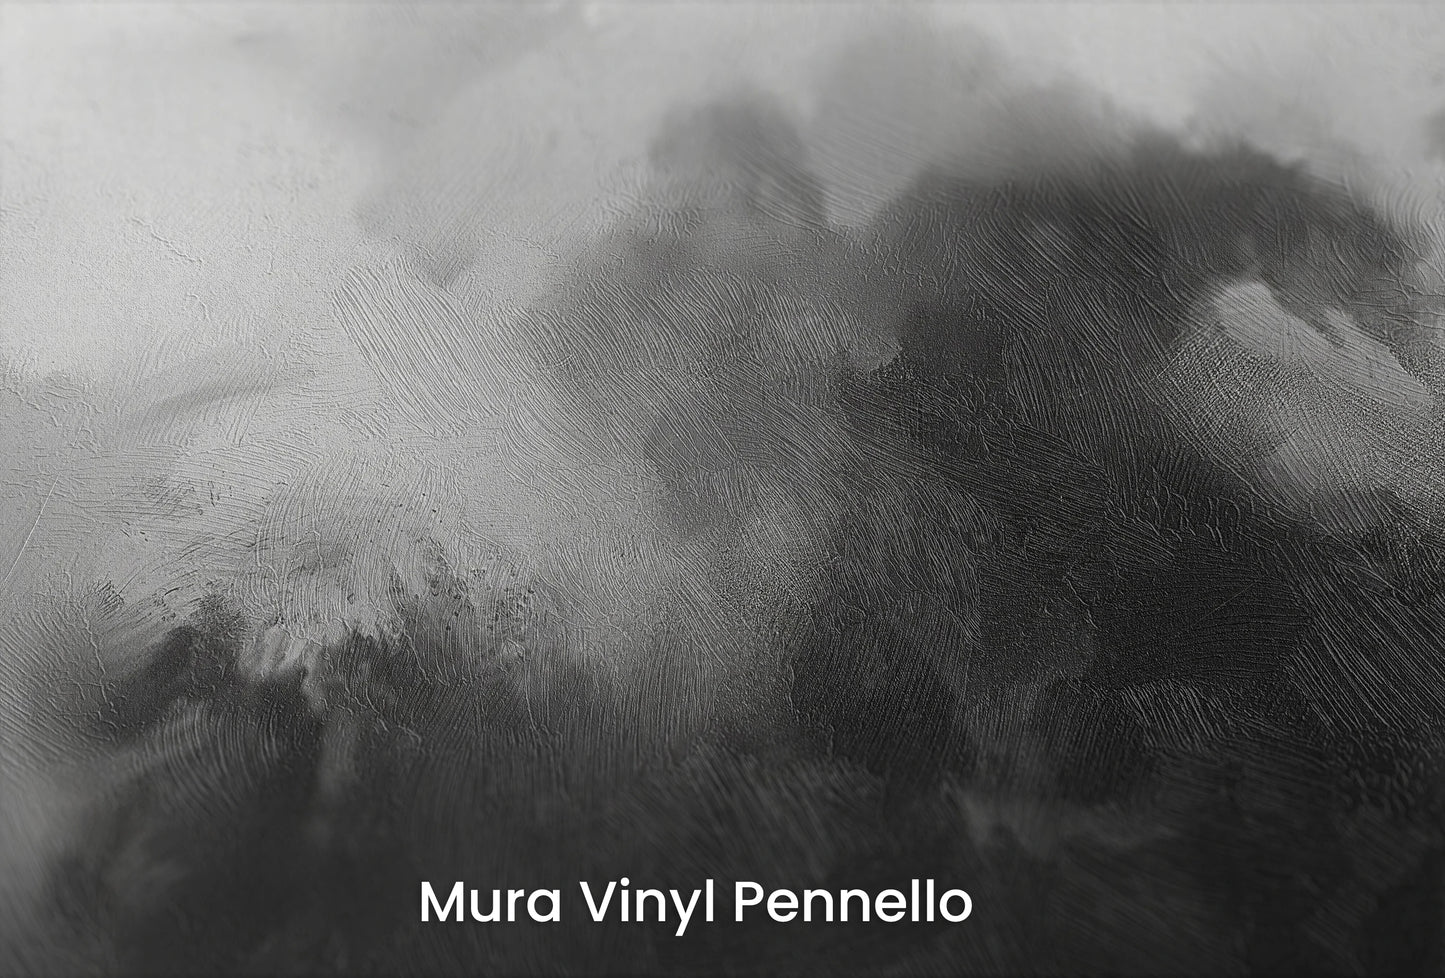 Zbliżenie na artystyczną fototapetę o nazwie Brooding Skies na podłożu Mura Vinyl Pennello - faktura pociągnięć pędzla malarskiego.